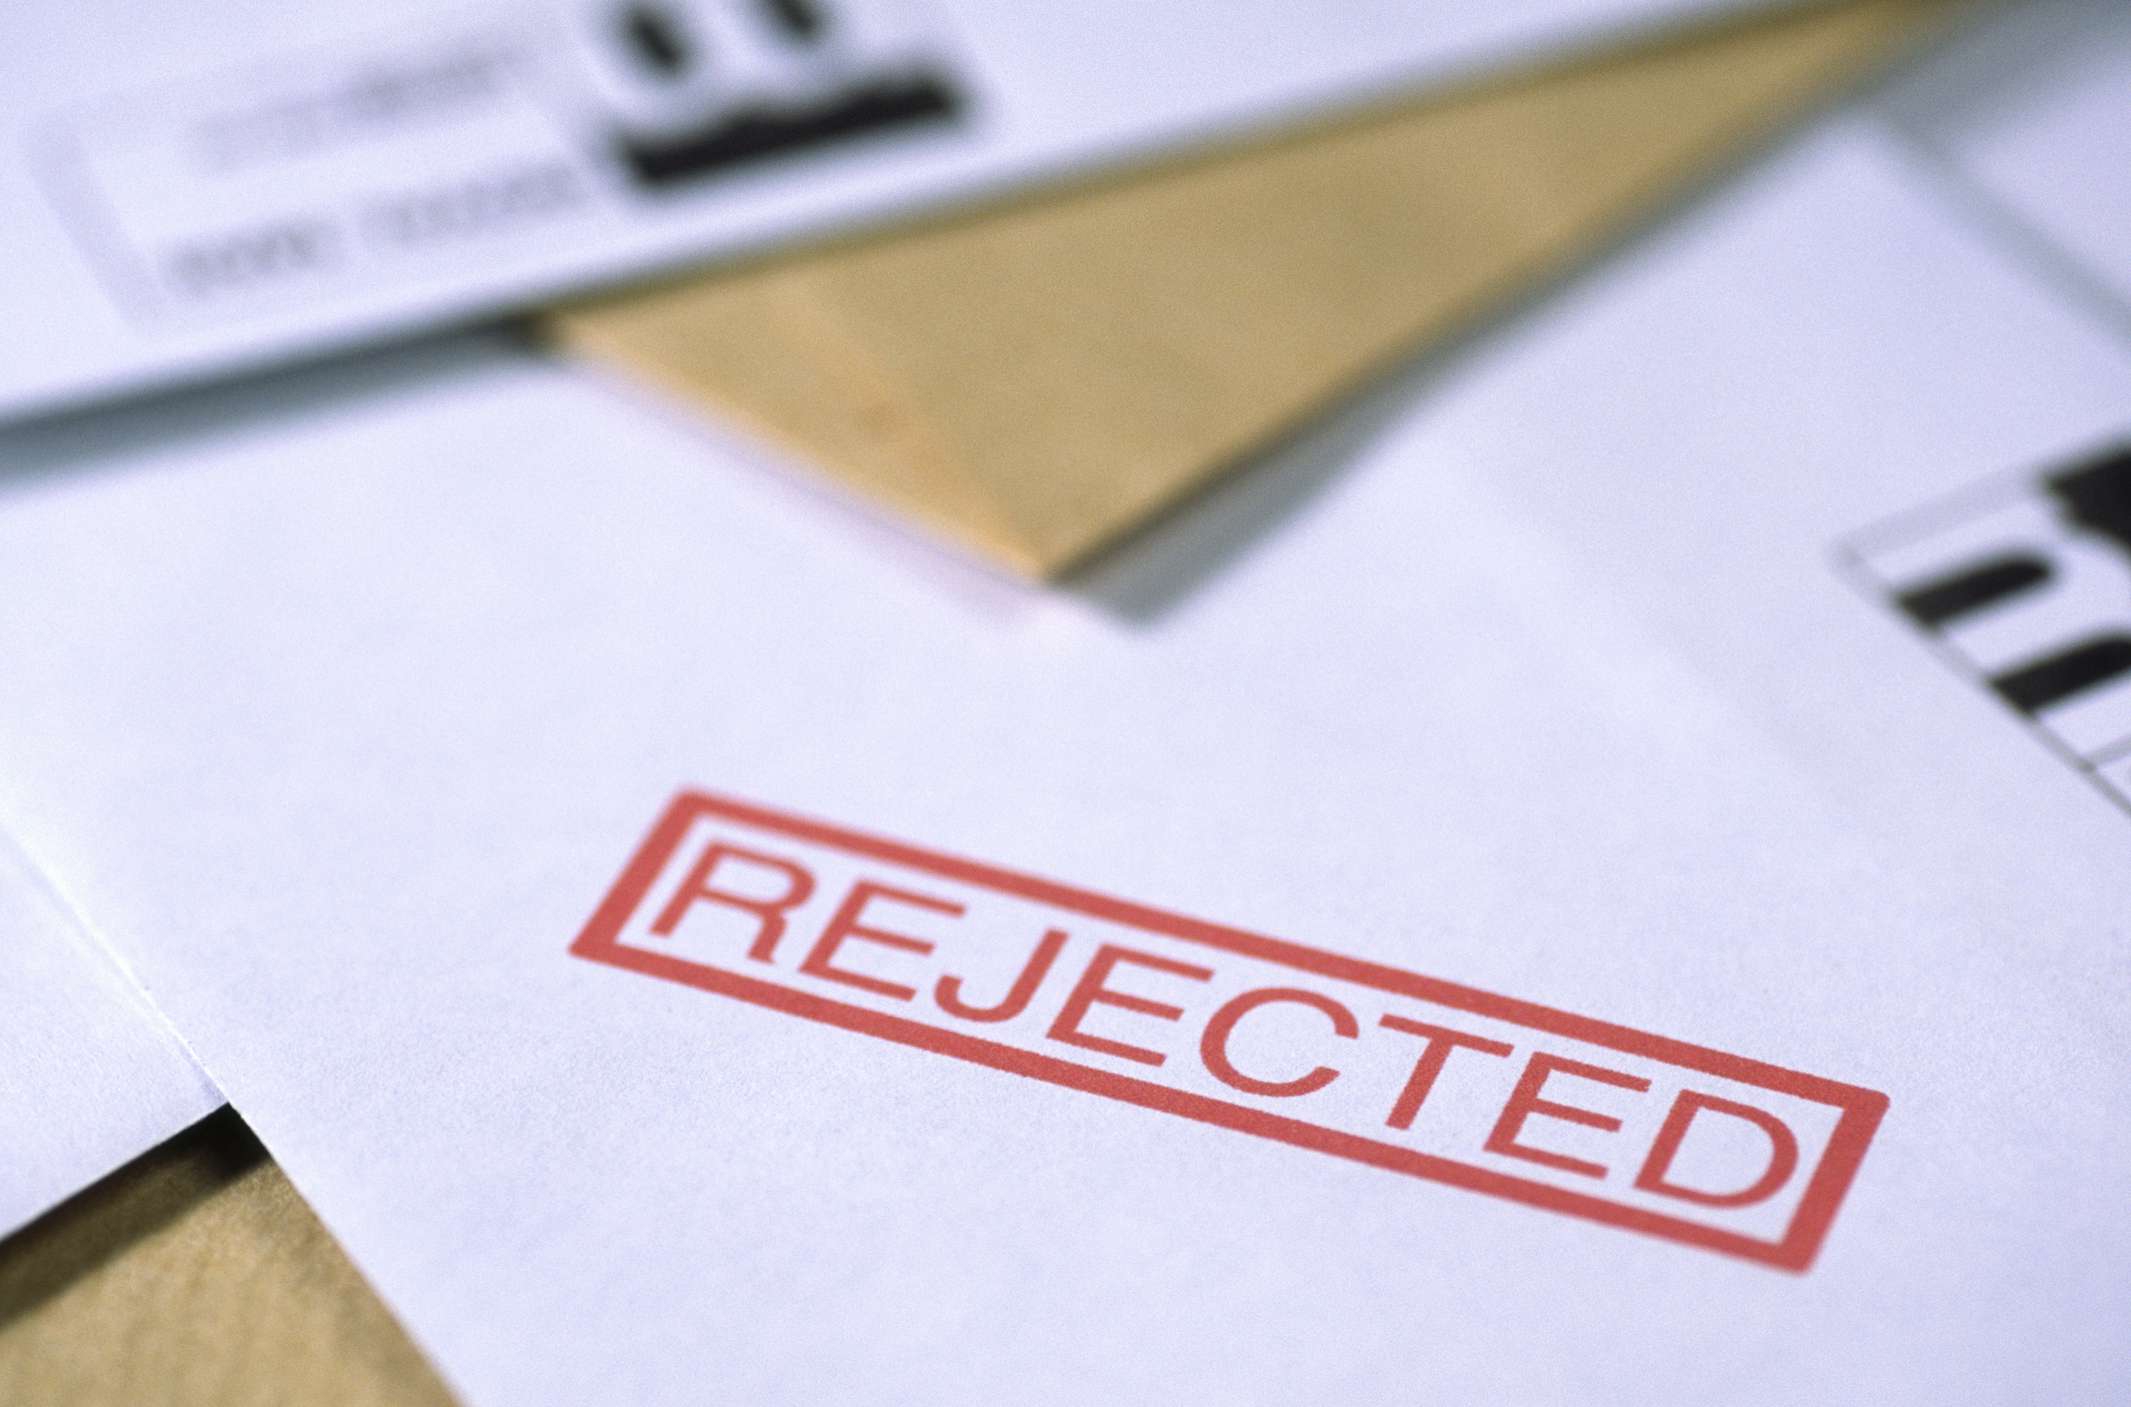 Rejection letter